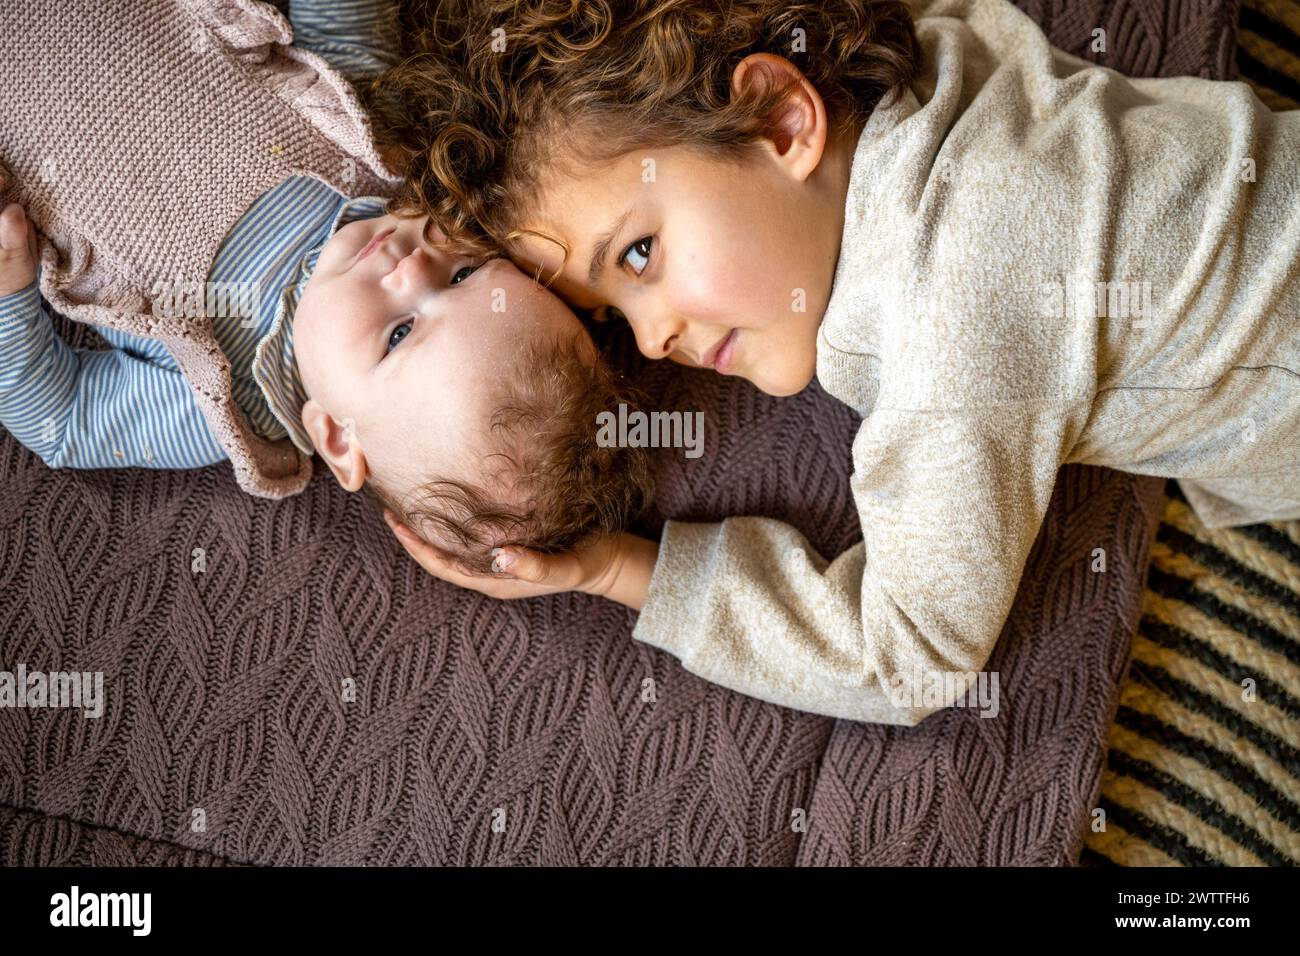 Un momento di tenerezza mentre un bambino guarda amorevolmente un fratello che riposa su un'accogliente coperta in maglia. Foto Stock